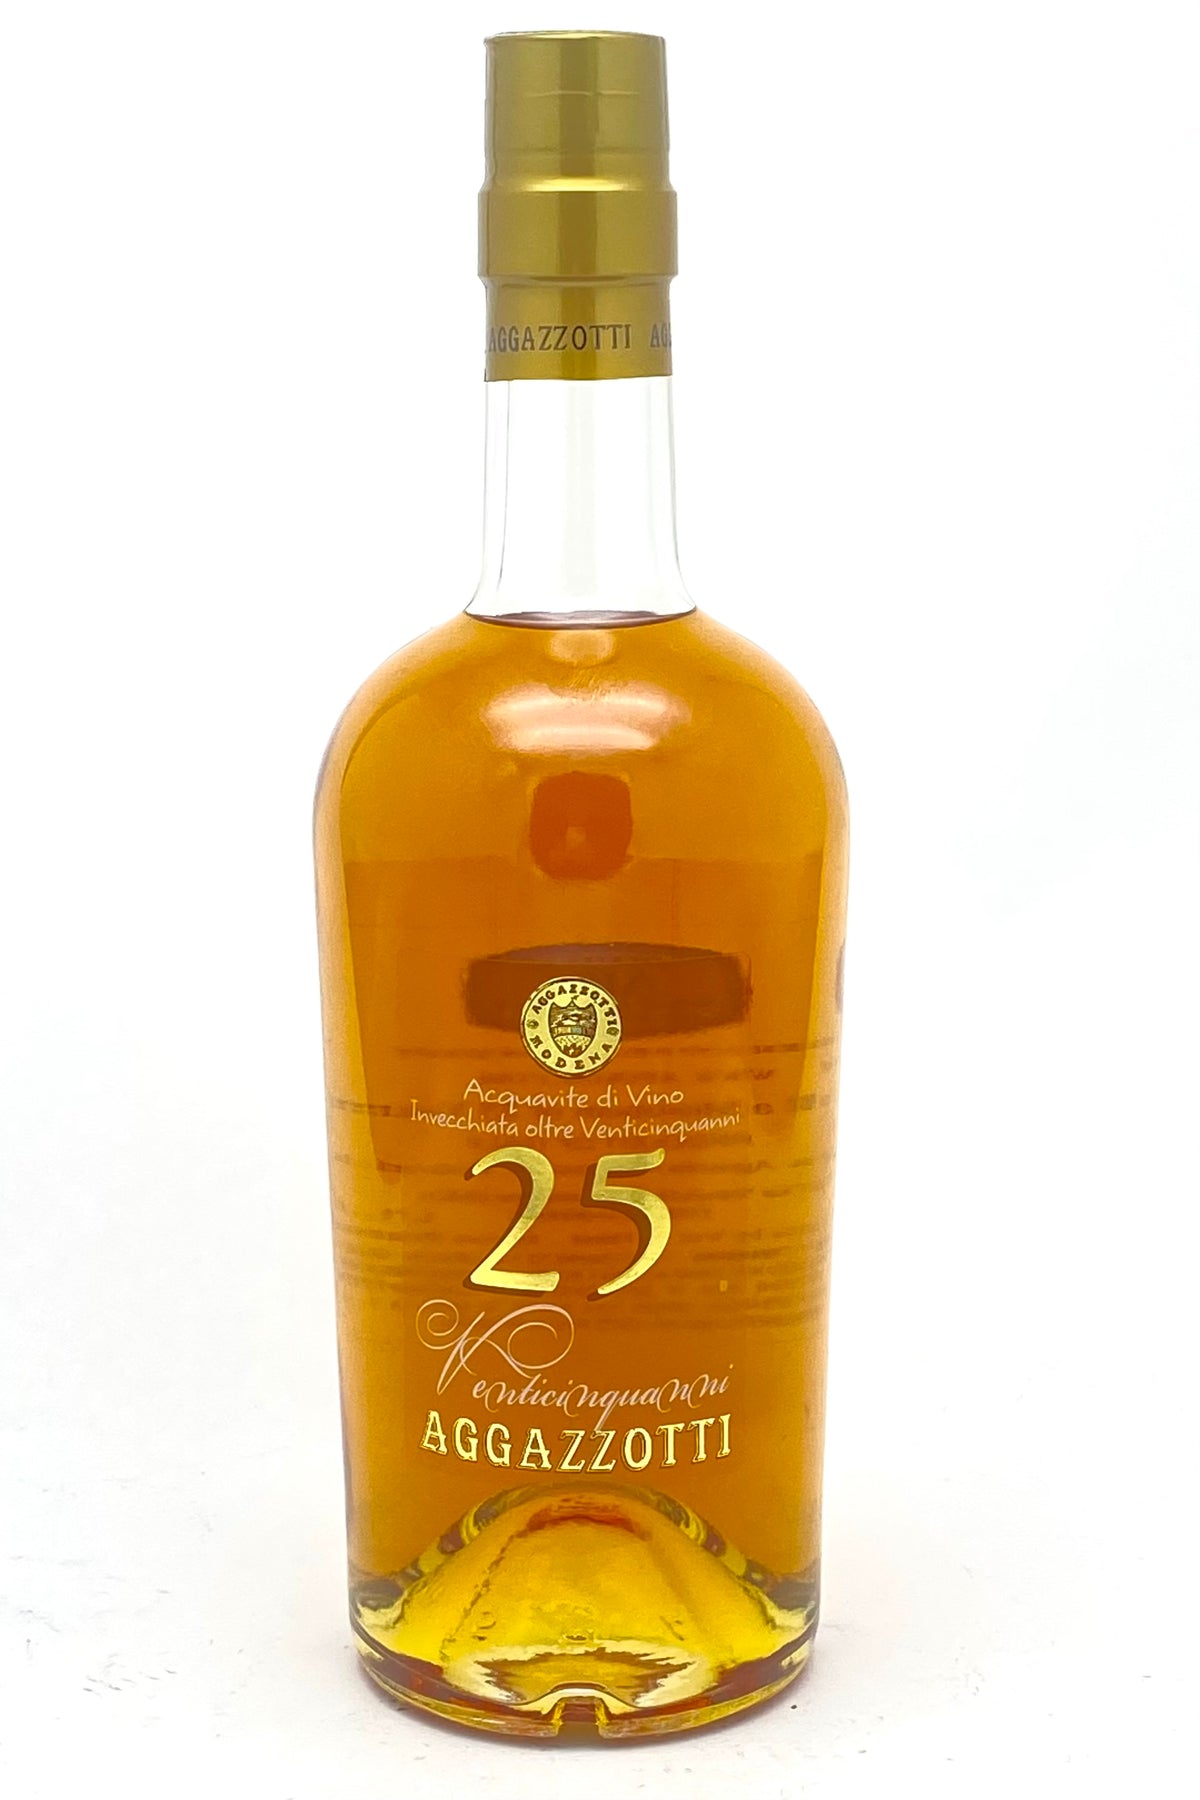 Aggazzotti 25-Year Venticinquanni Italian Brandy